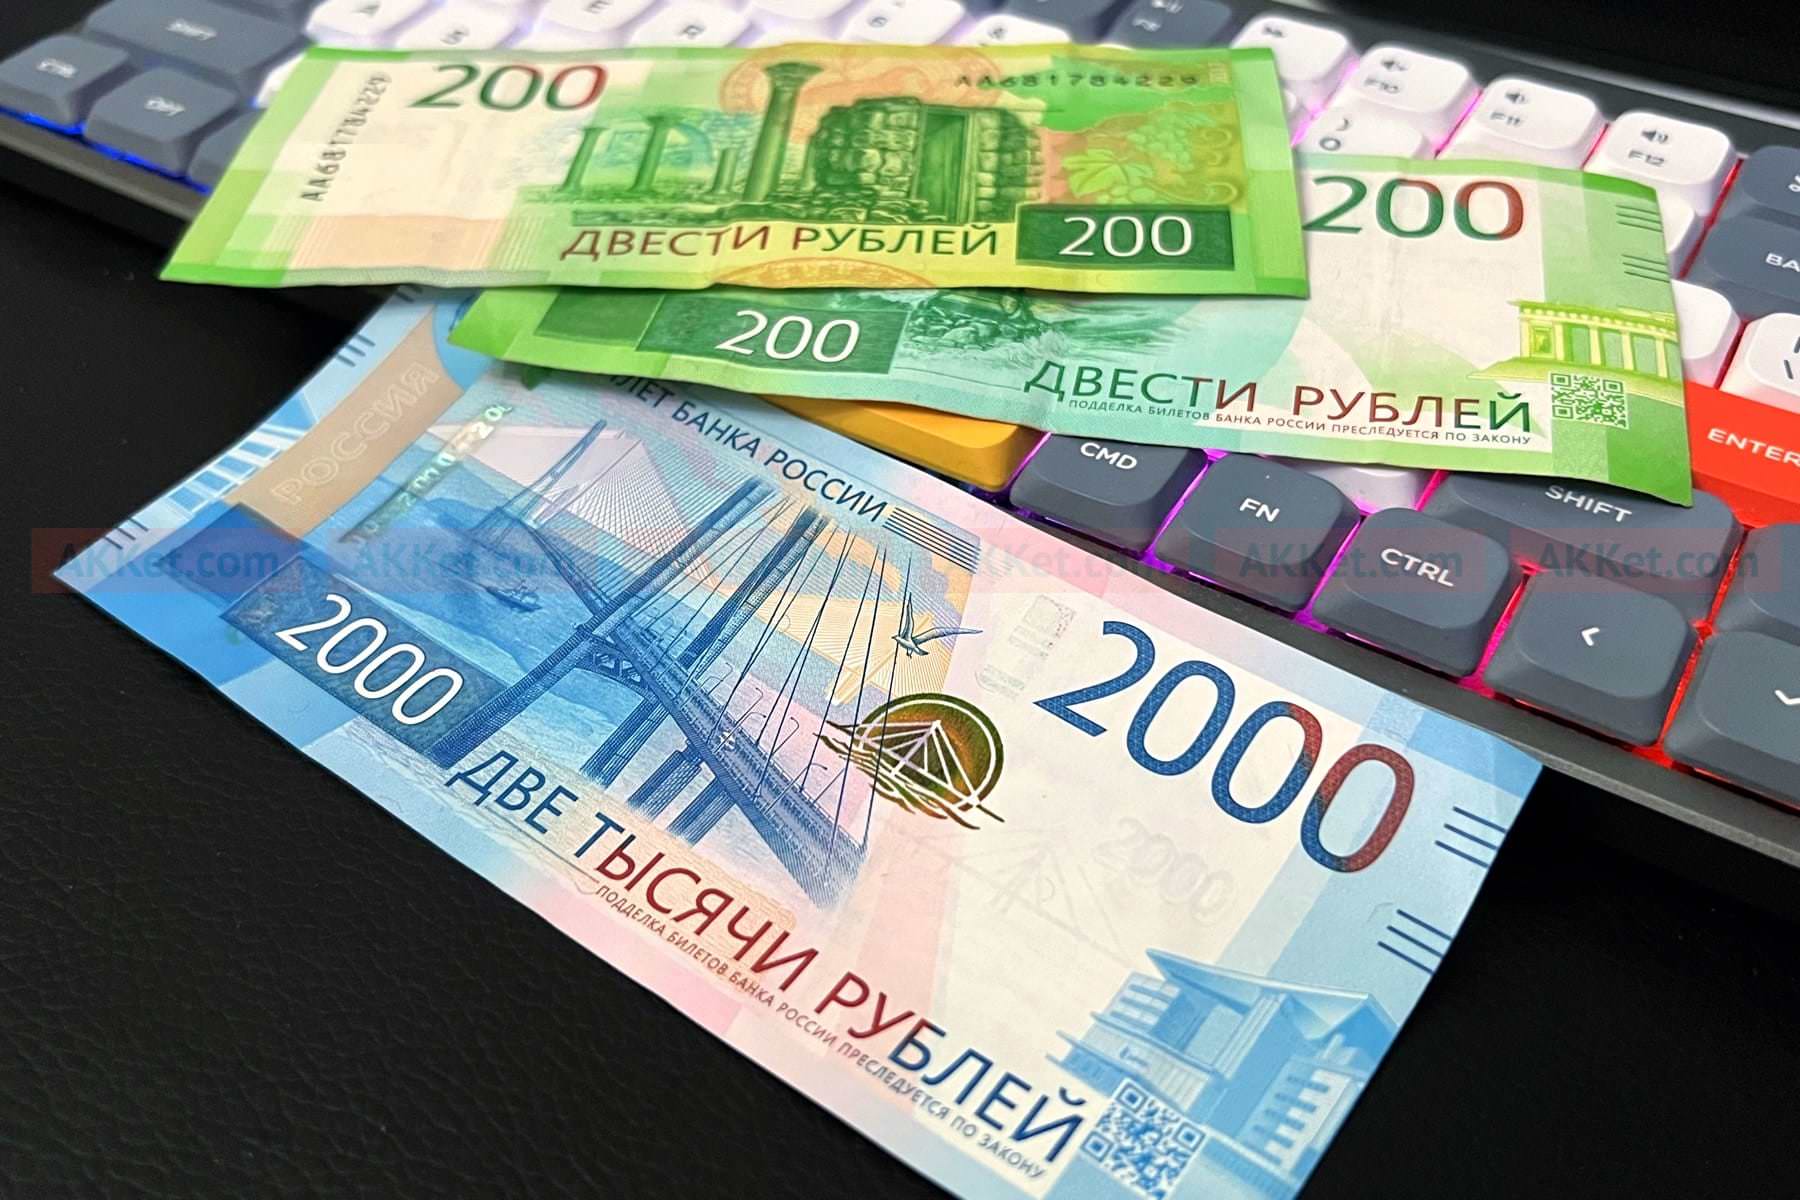 Обнаружена редкая банкнота, за которую всем выплачивают более 200 000 рублей